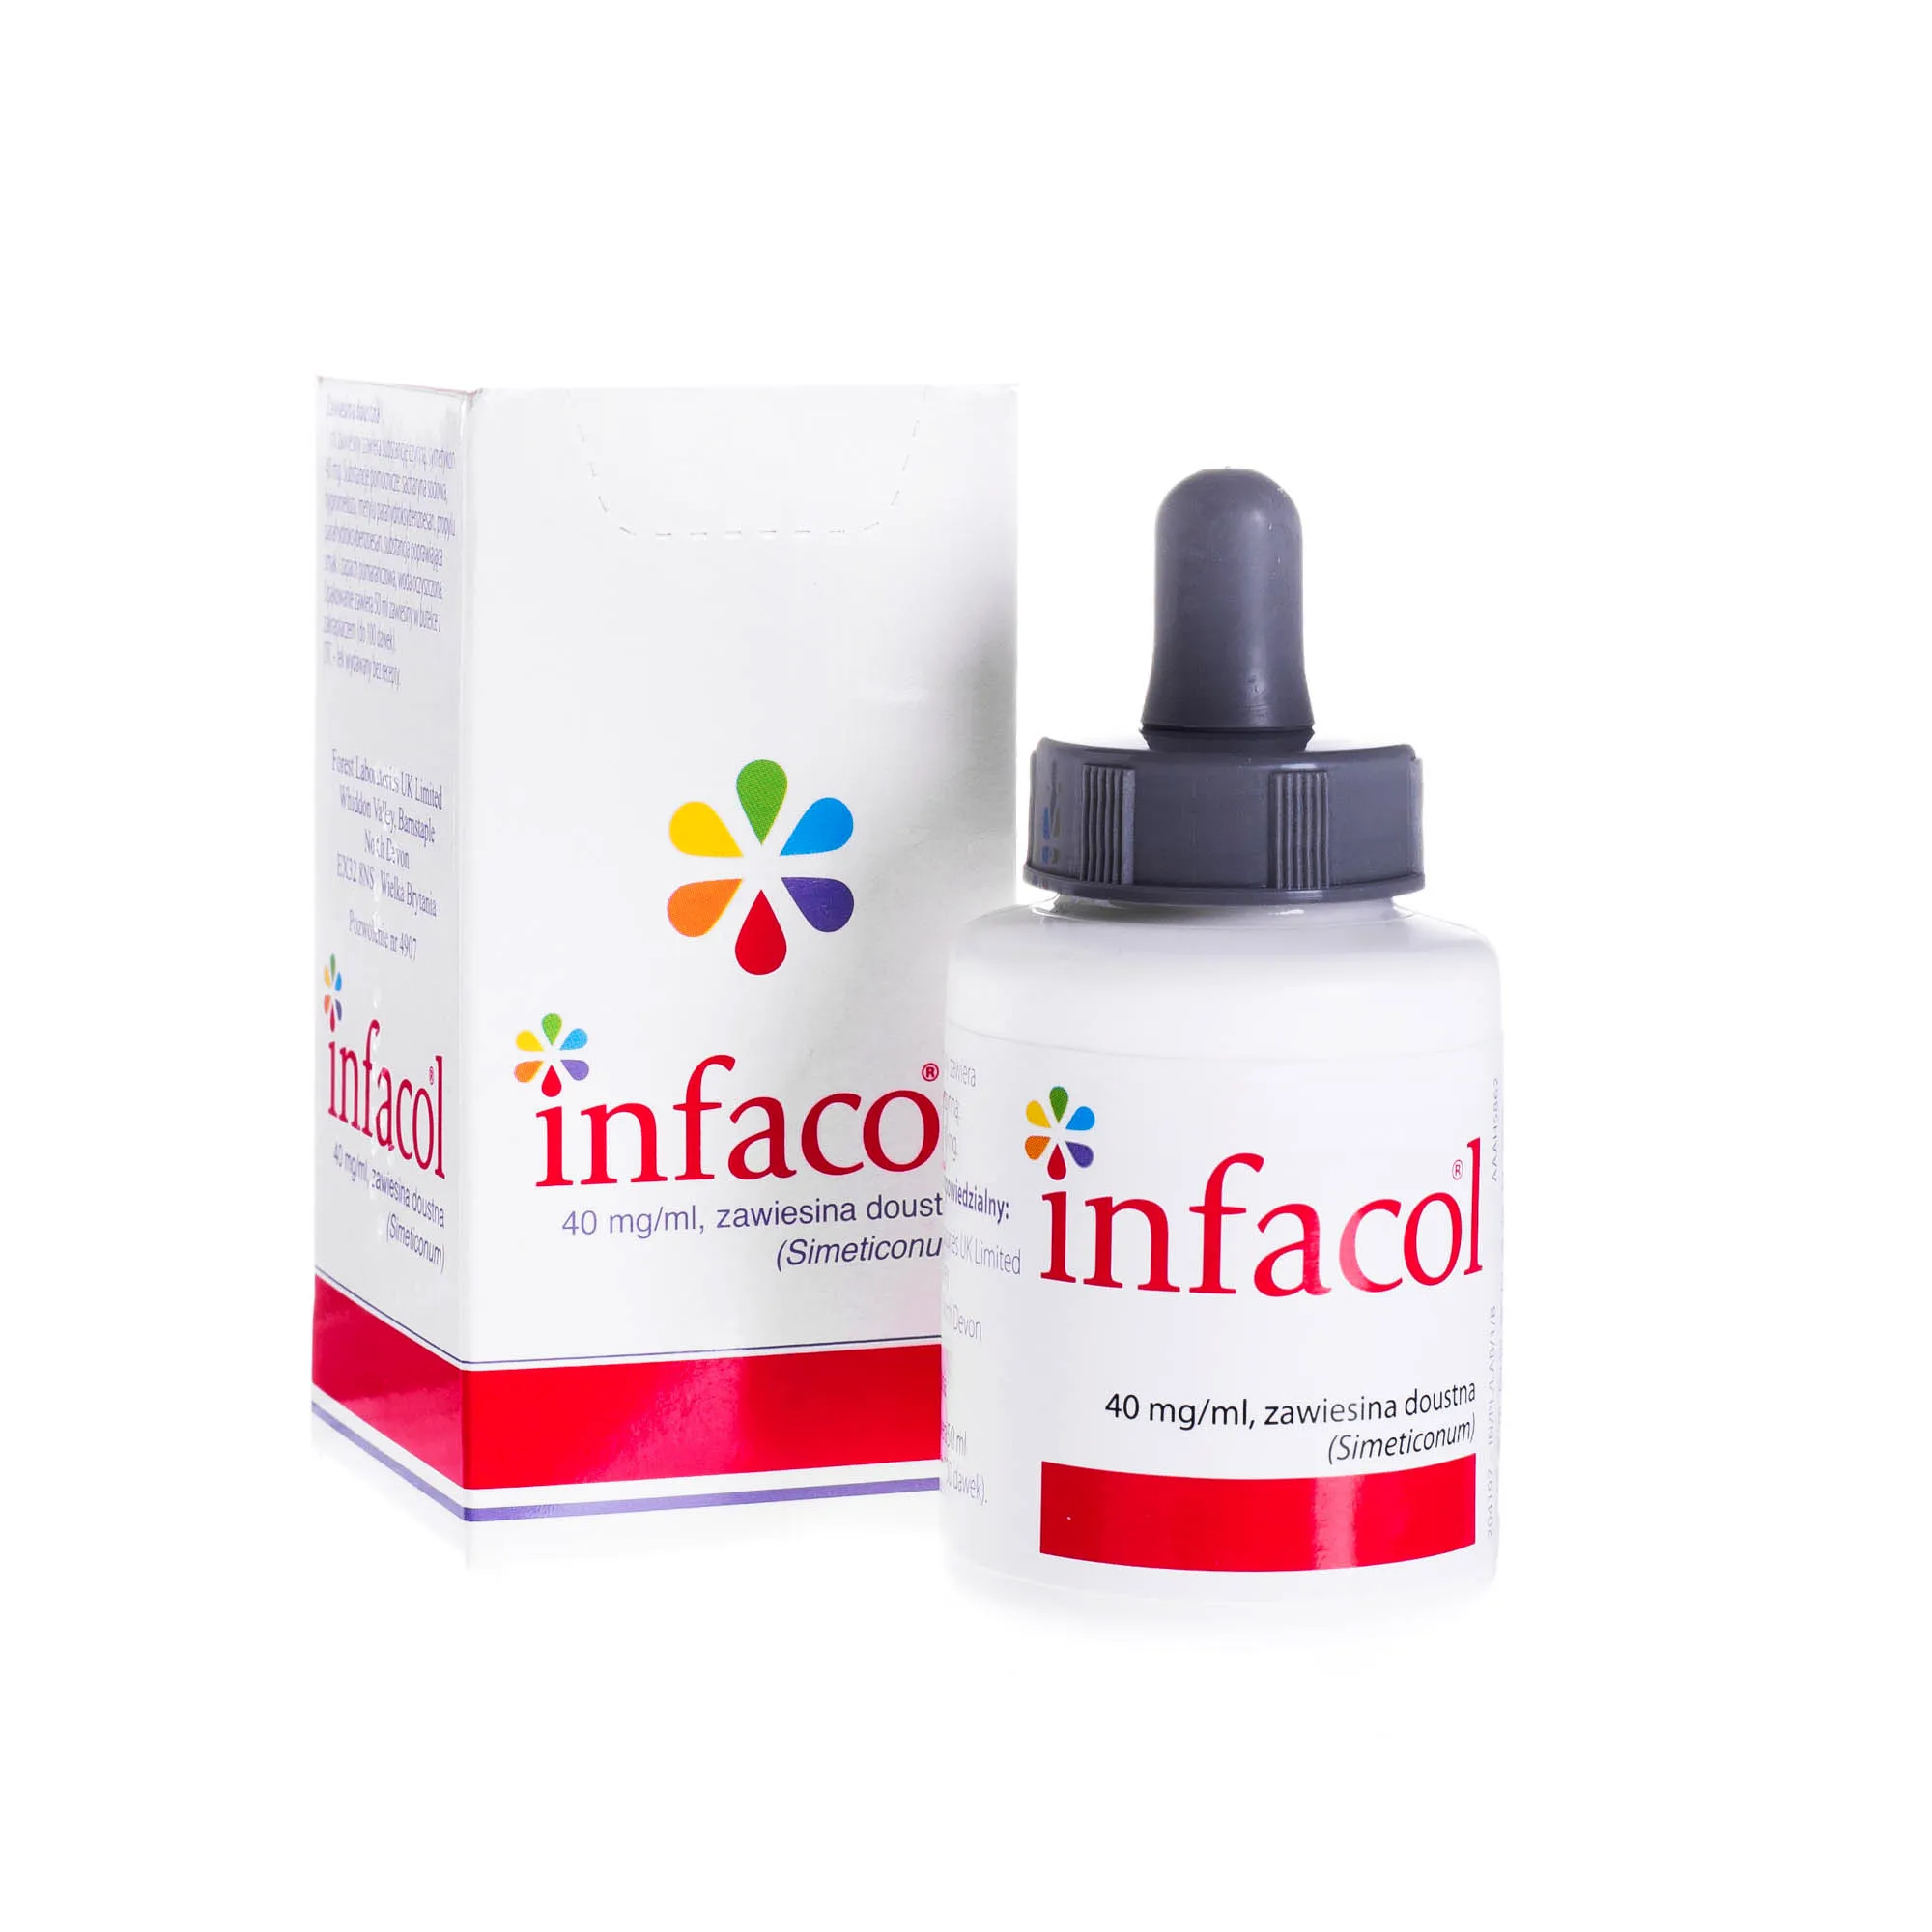 Infacol 40 mg/ml - zawiesina doustna stosowana w celu łagodzenia dolegliwościach związanych z gazami, 50 ml